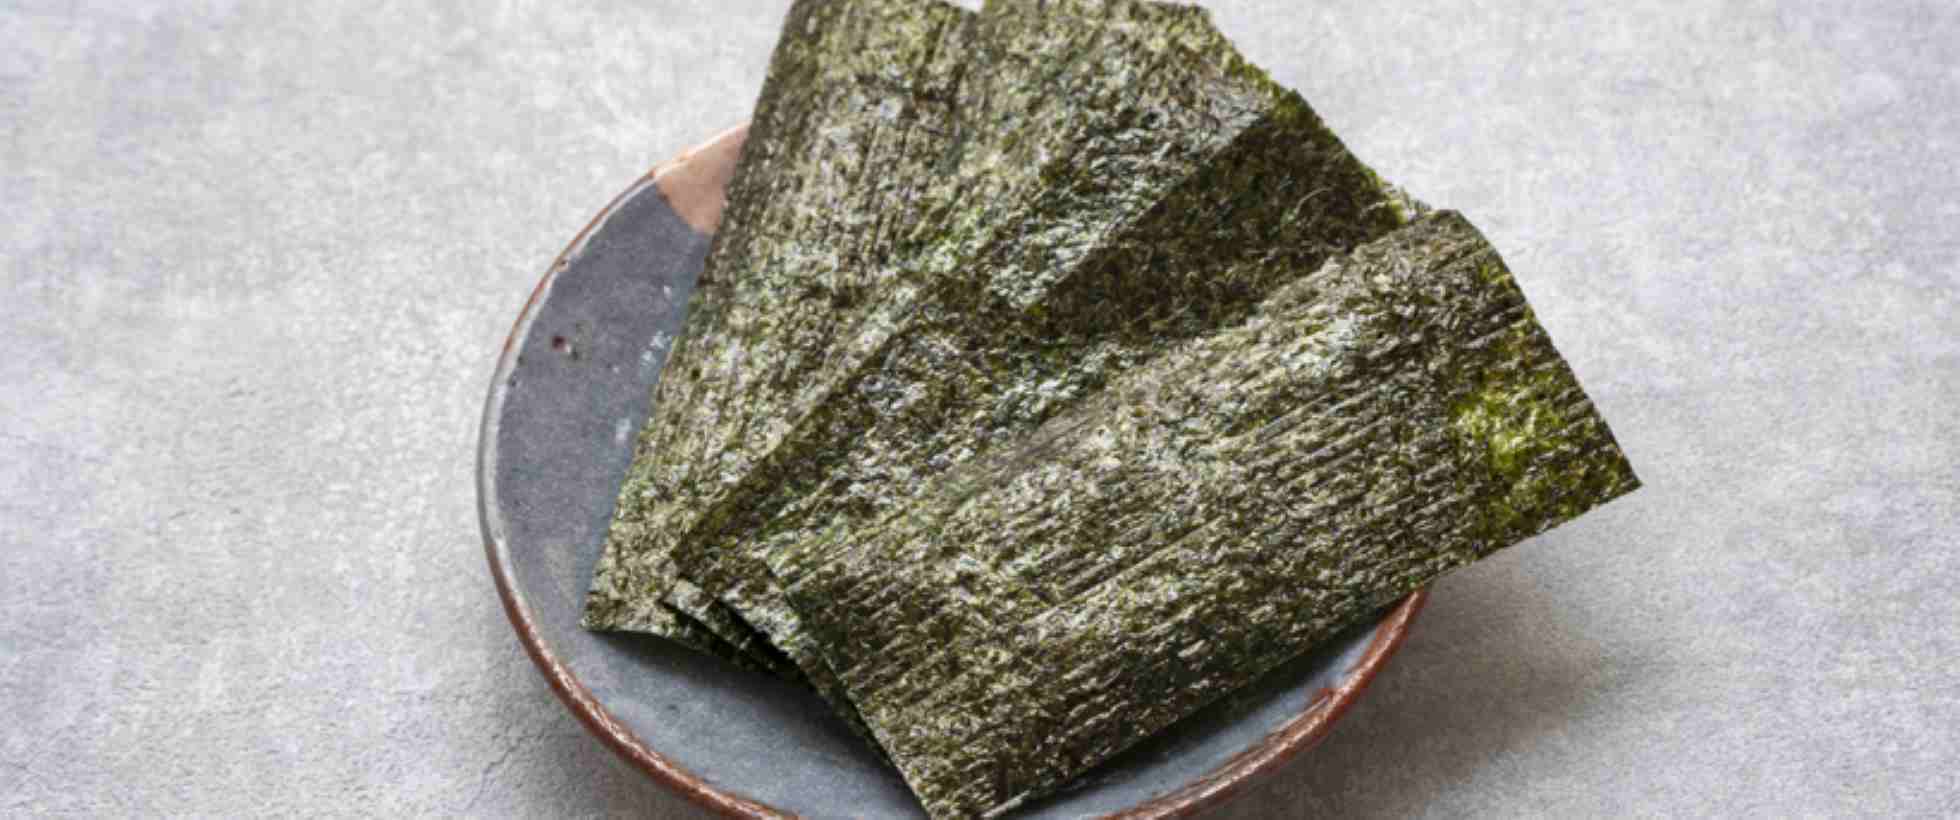 Come si mangiano le alghe nori? - Torrinomedica